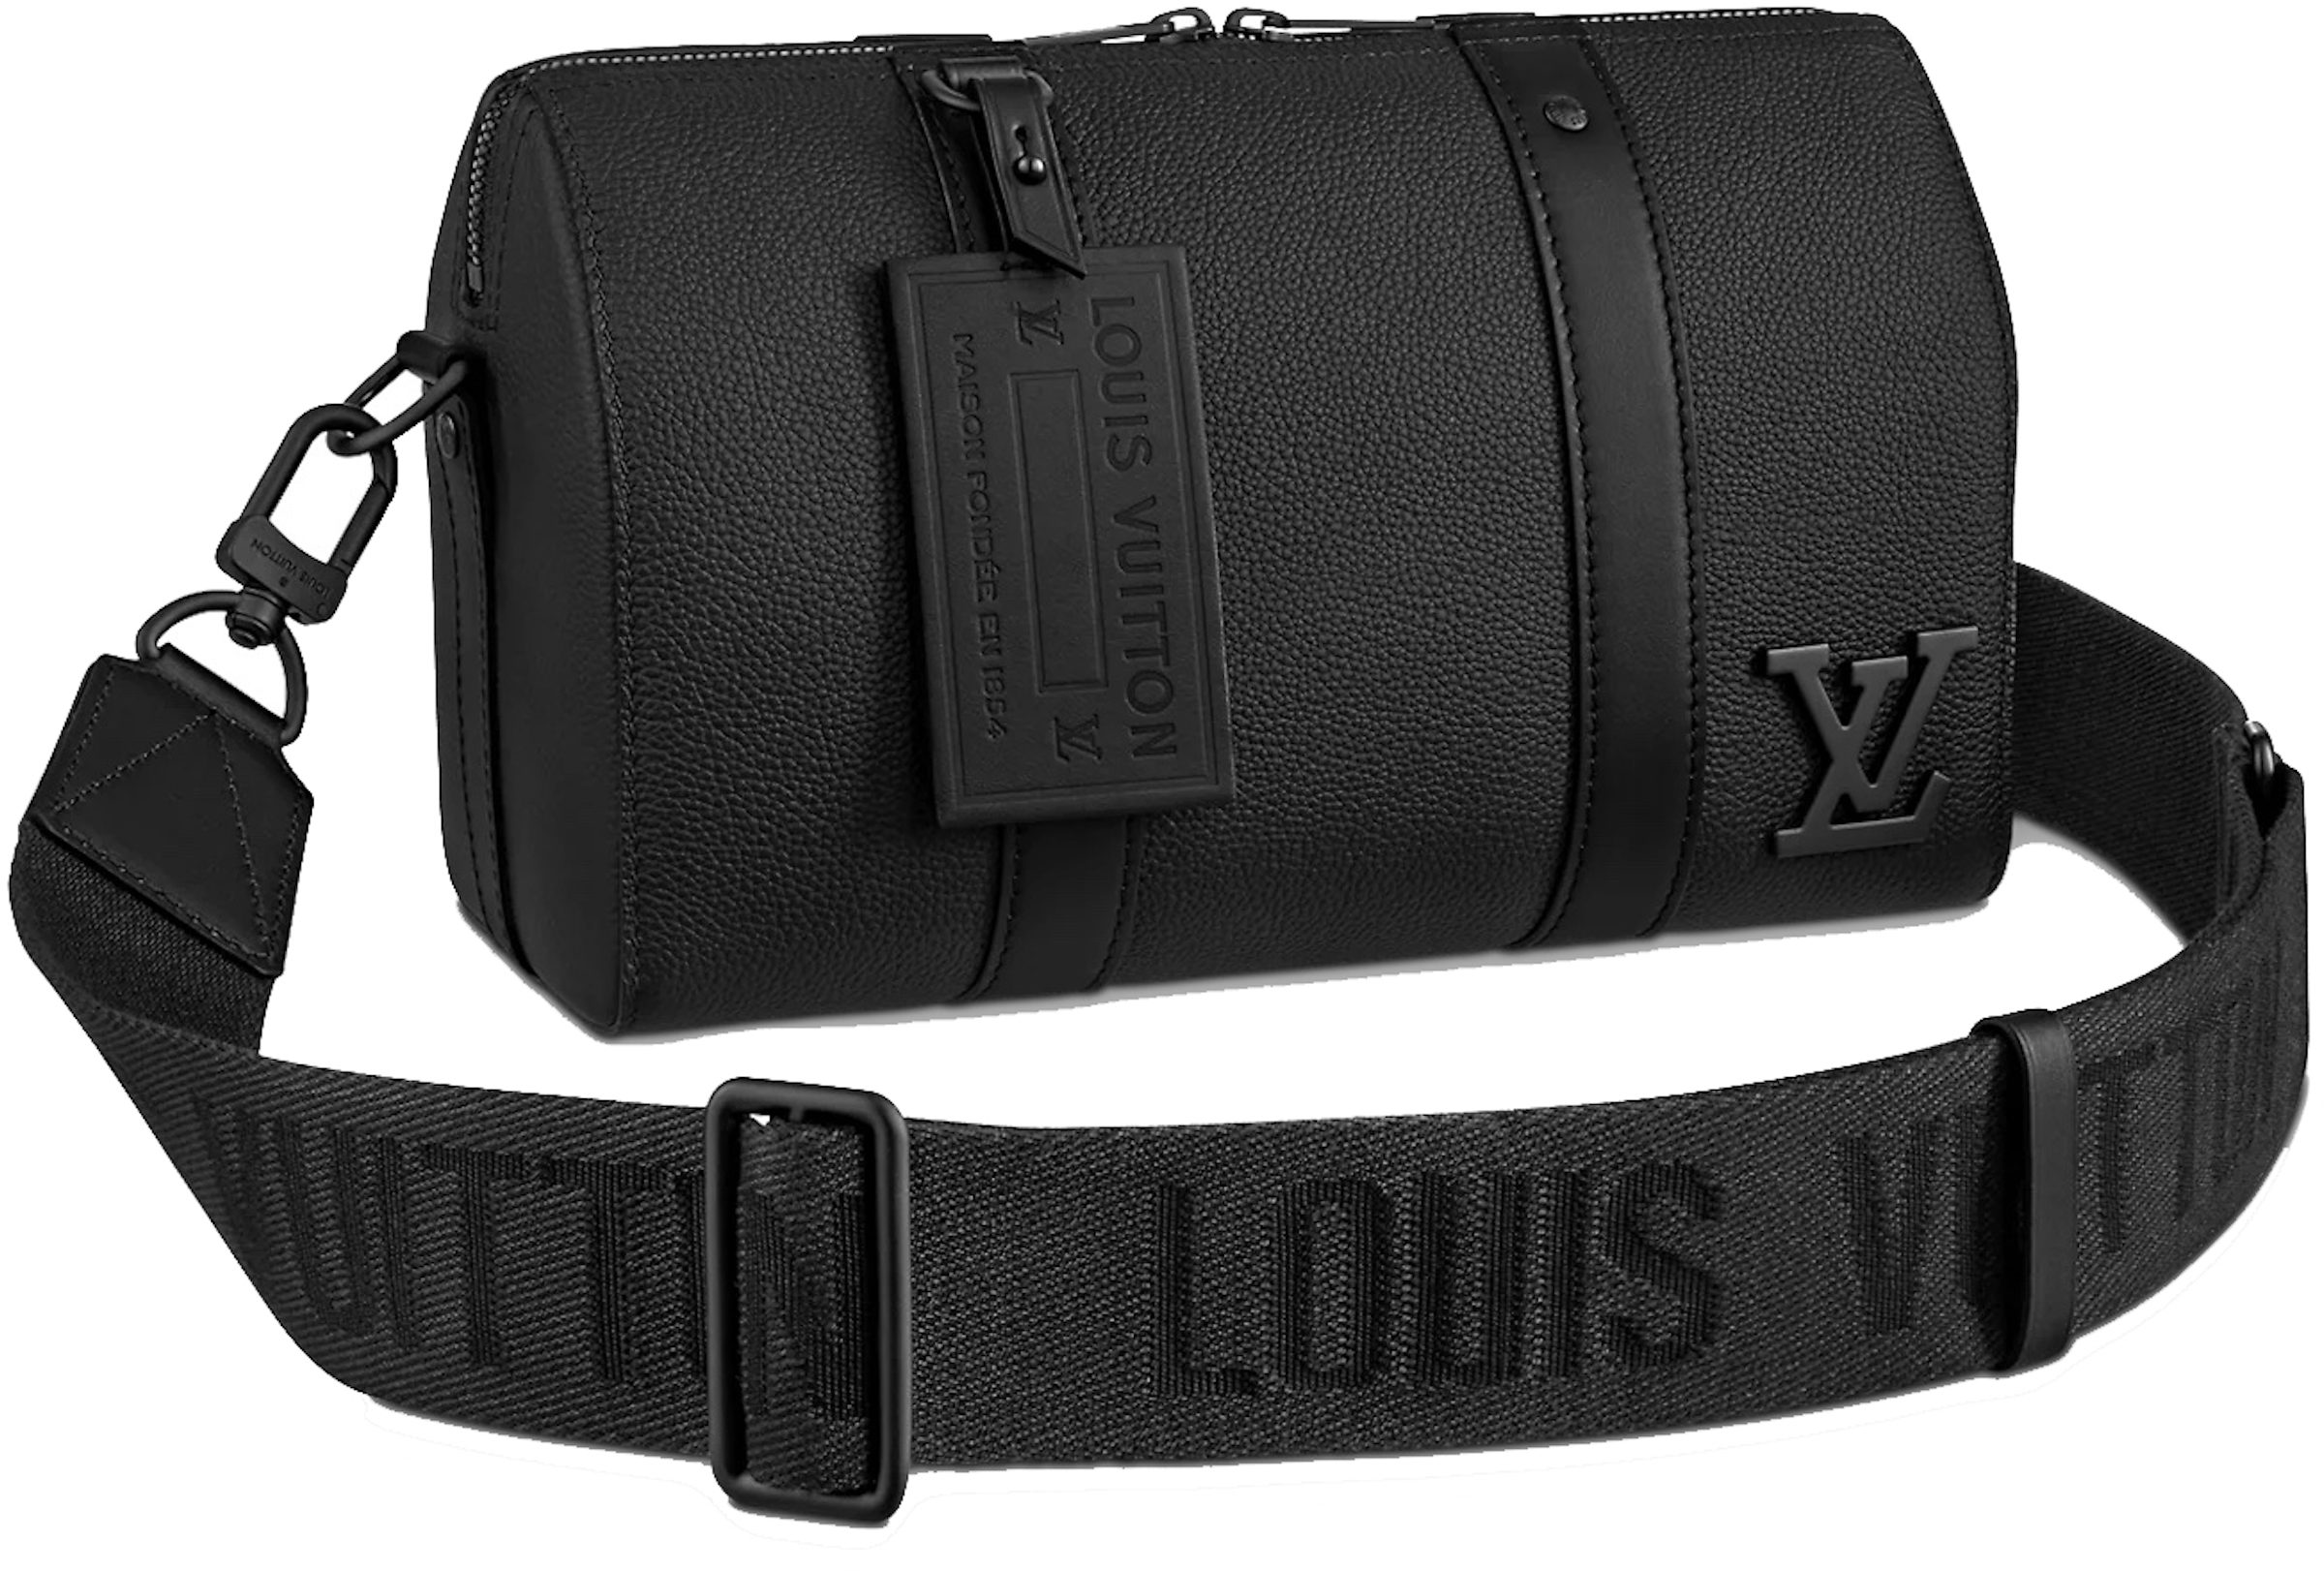 Louis Vuitton Keepall City Aerogram Black in Grained Calfskin